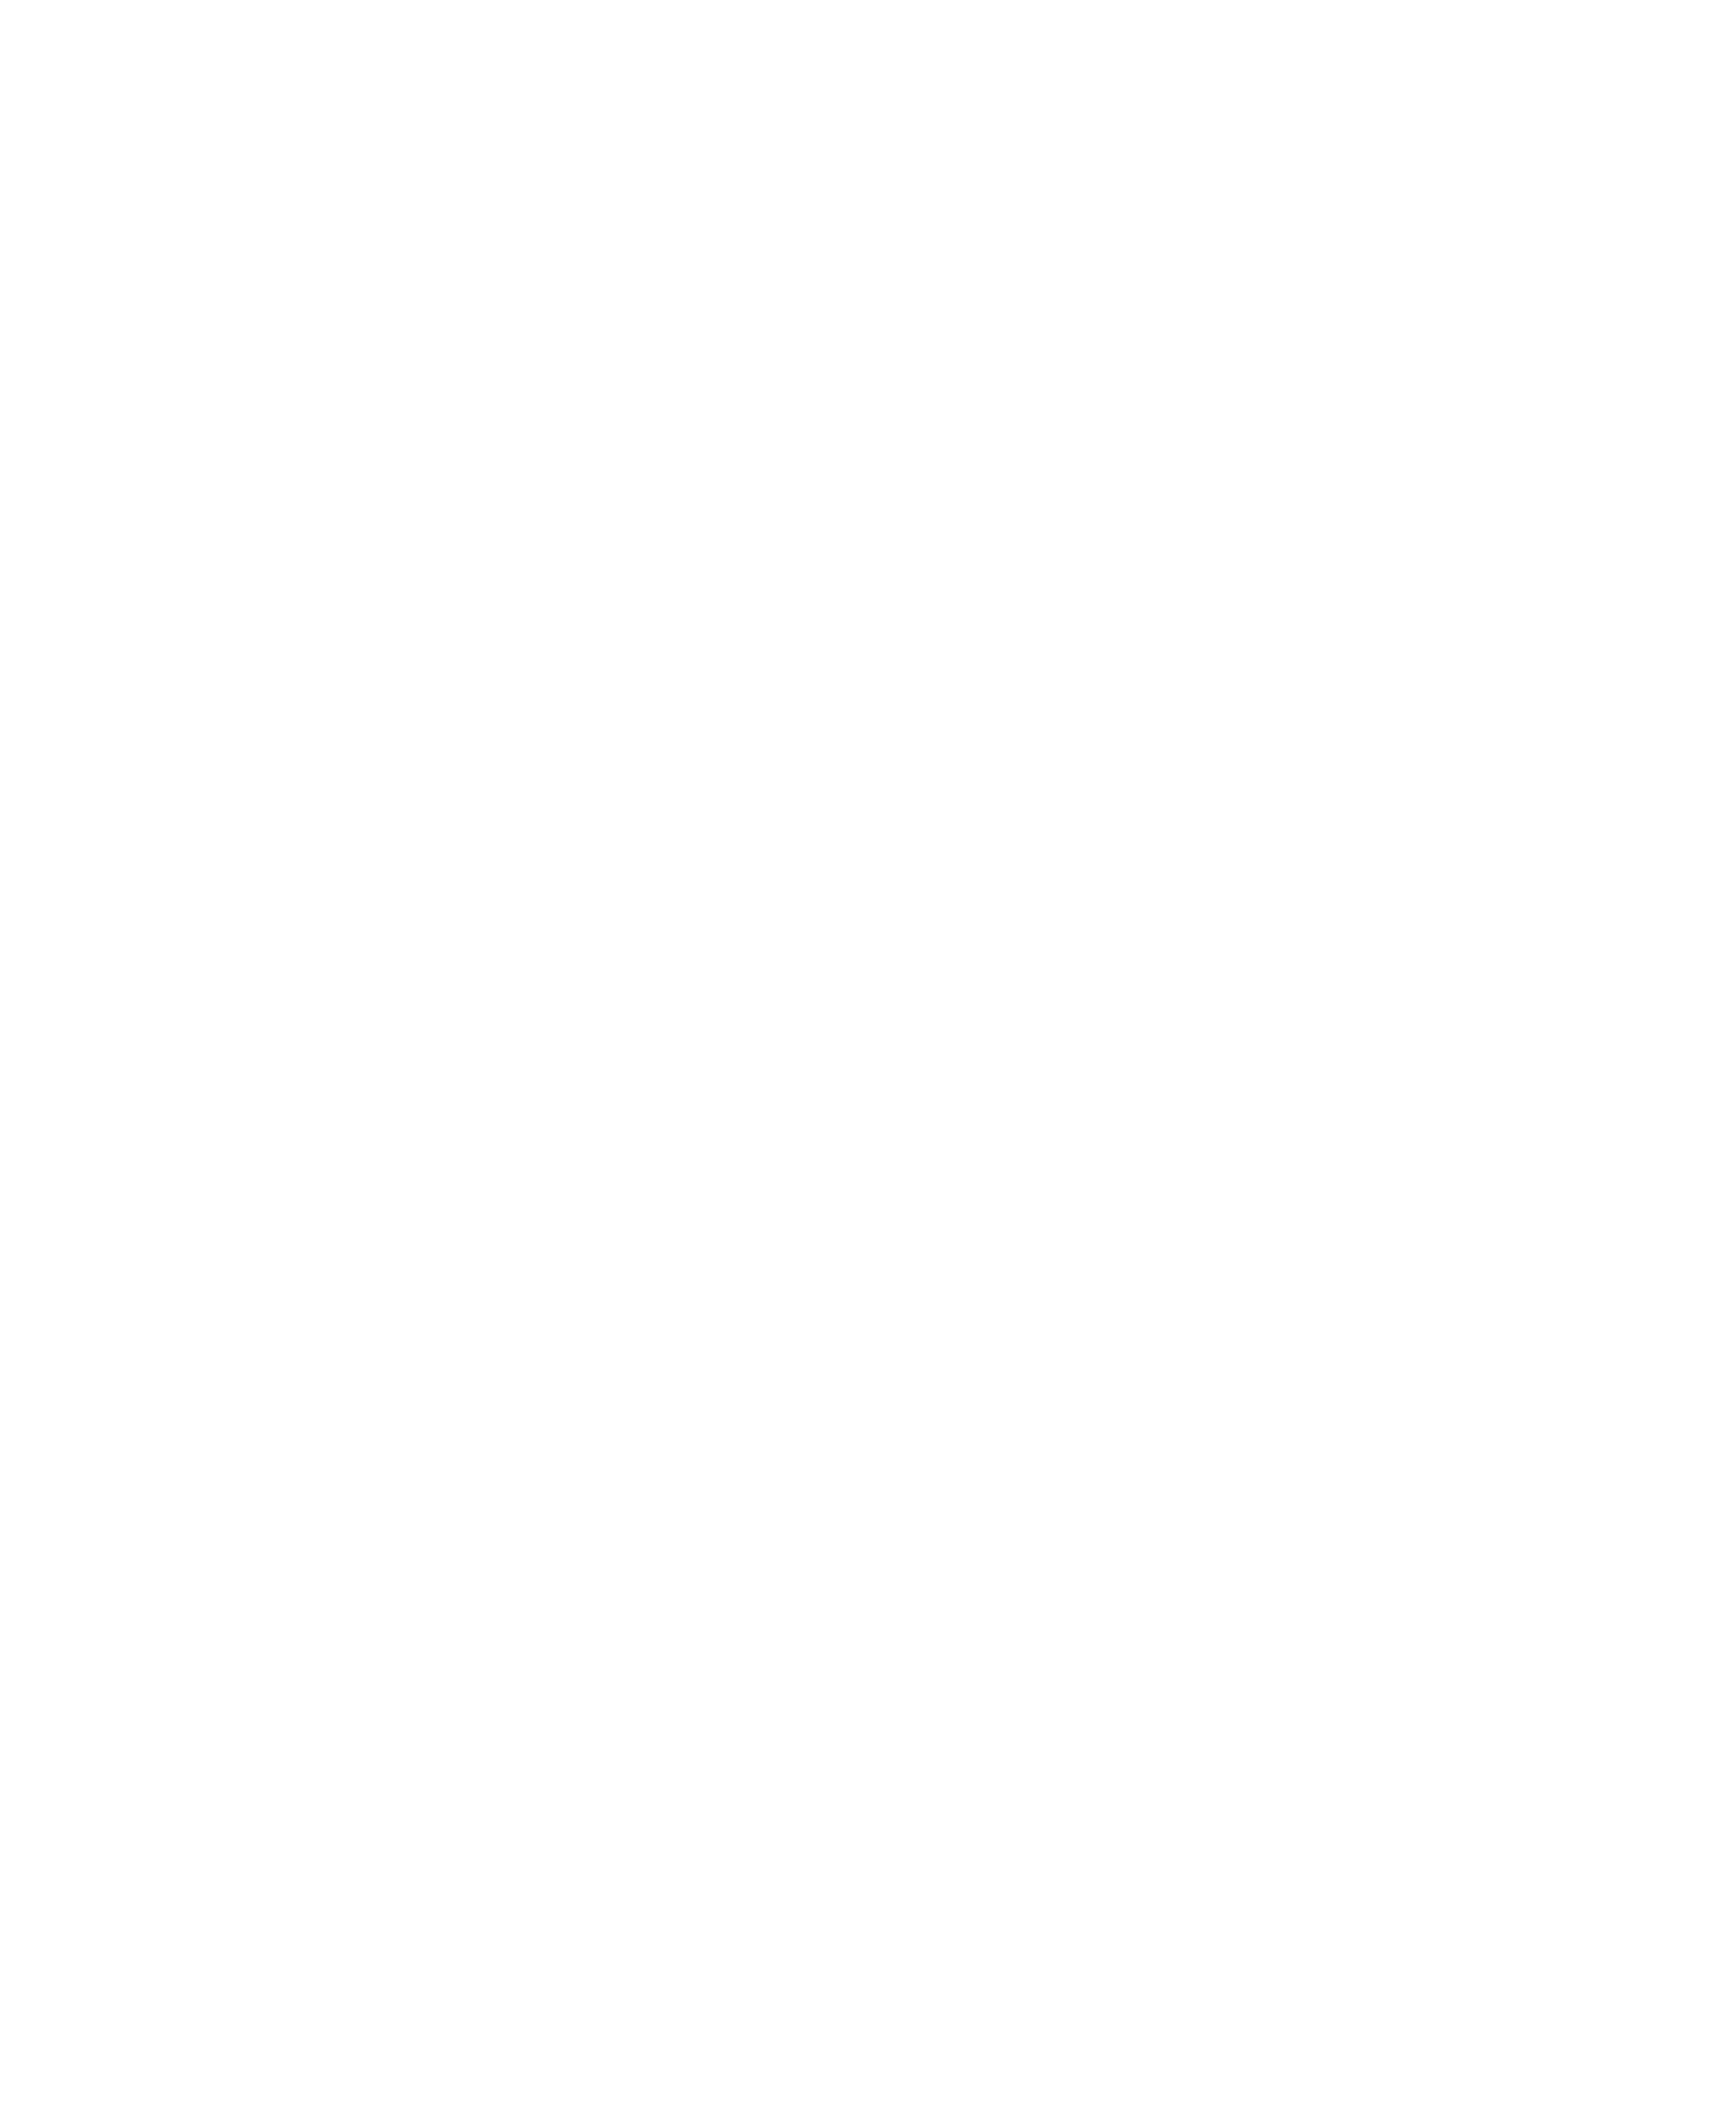 Bouwmans Cabinetry